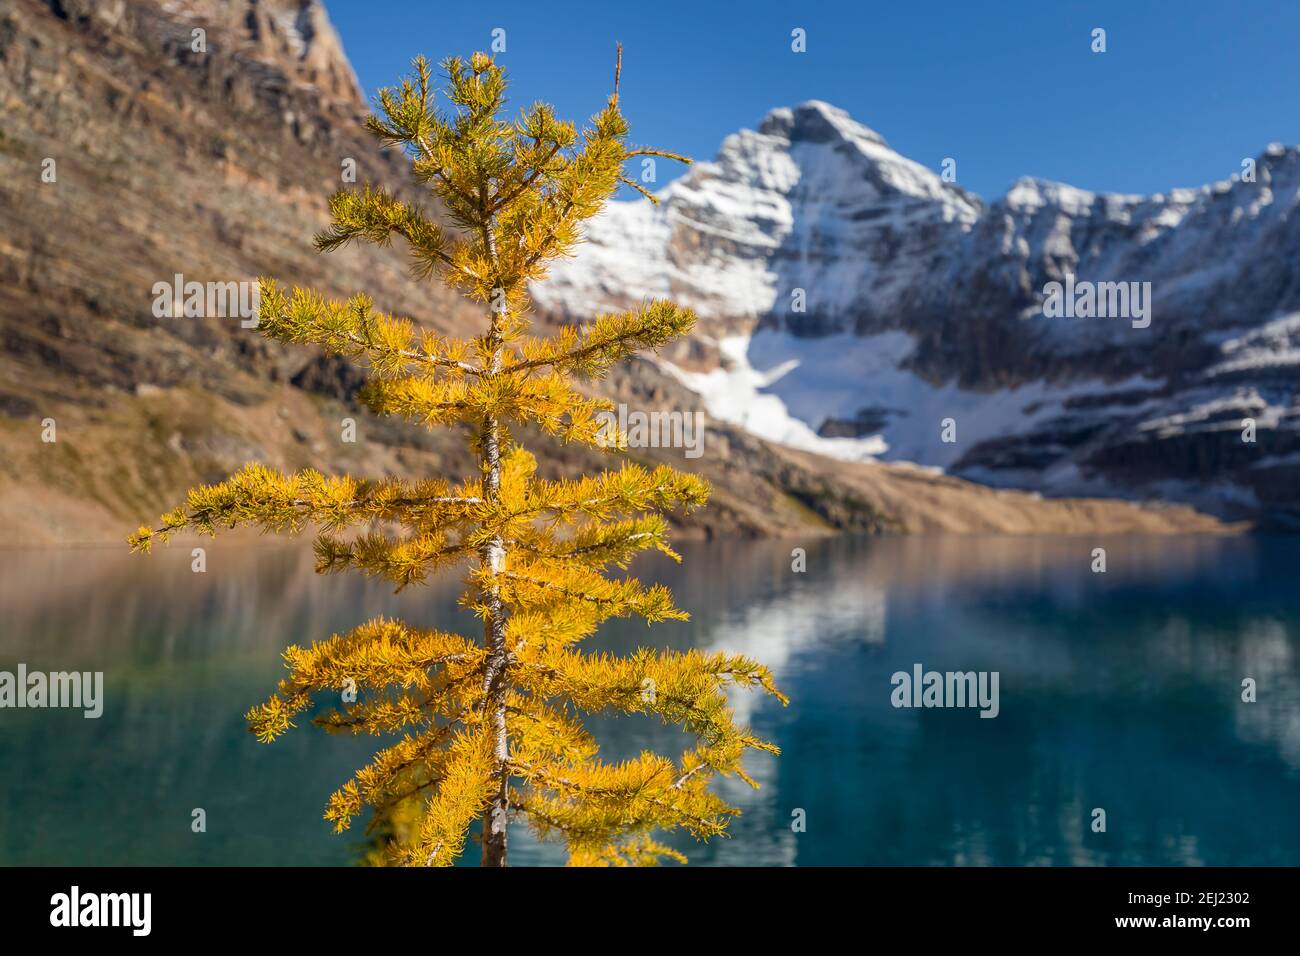 Rocheuses canadiennes paysage d'un mélèze jaune doré pendant l'automne avec un fond flou en noir et blanc, lac, montagnes avec neige, Canada Banque D'Images